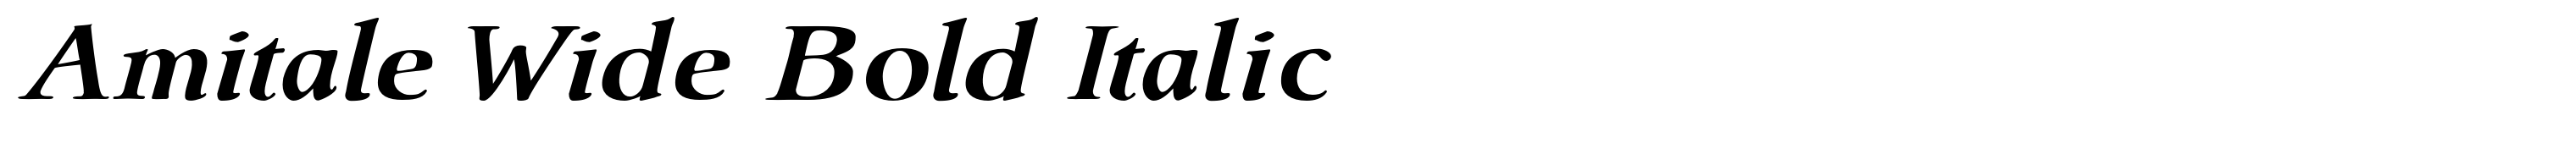 Amitale Wide Bold Italic